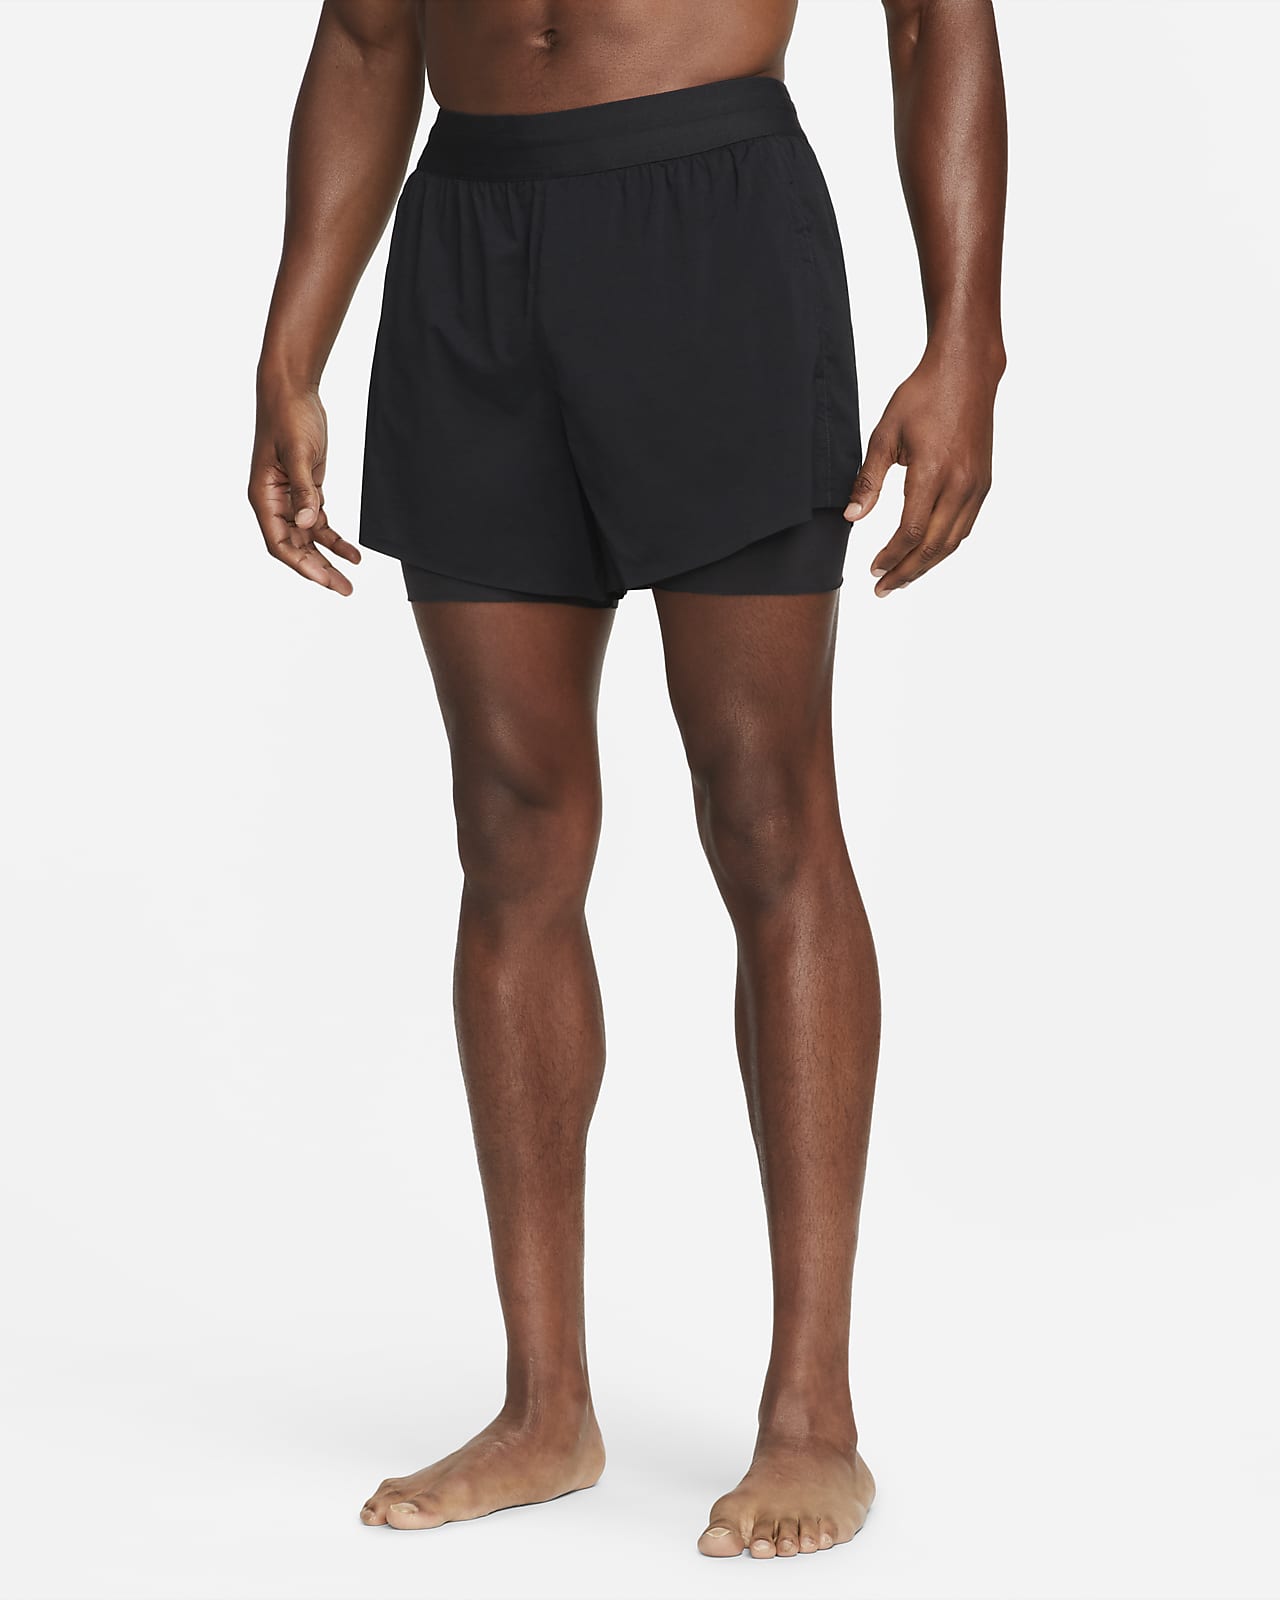 Shorts da hot yoga Nike Yoga – Uomo